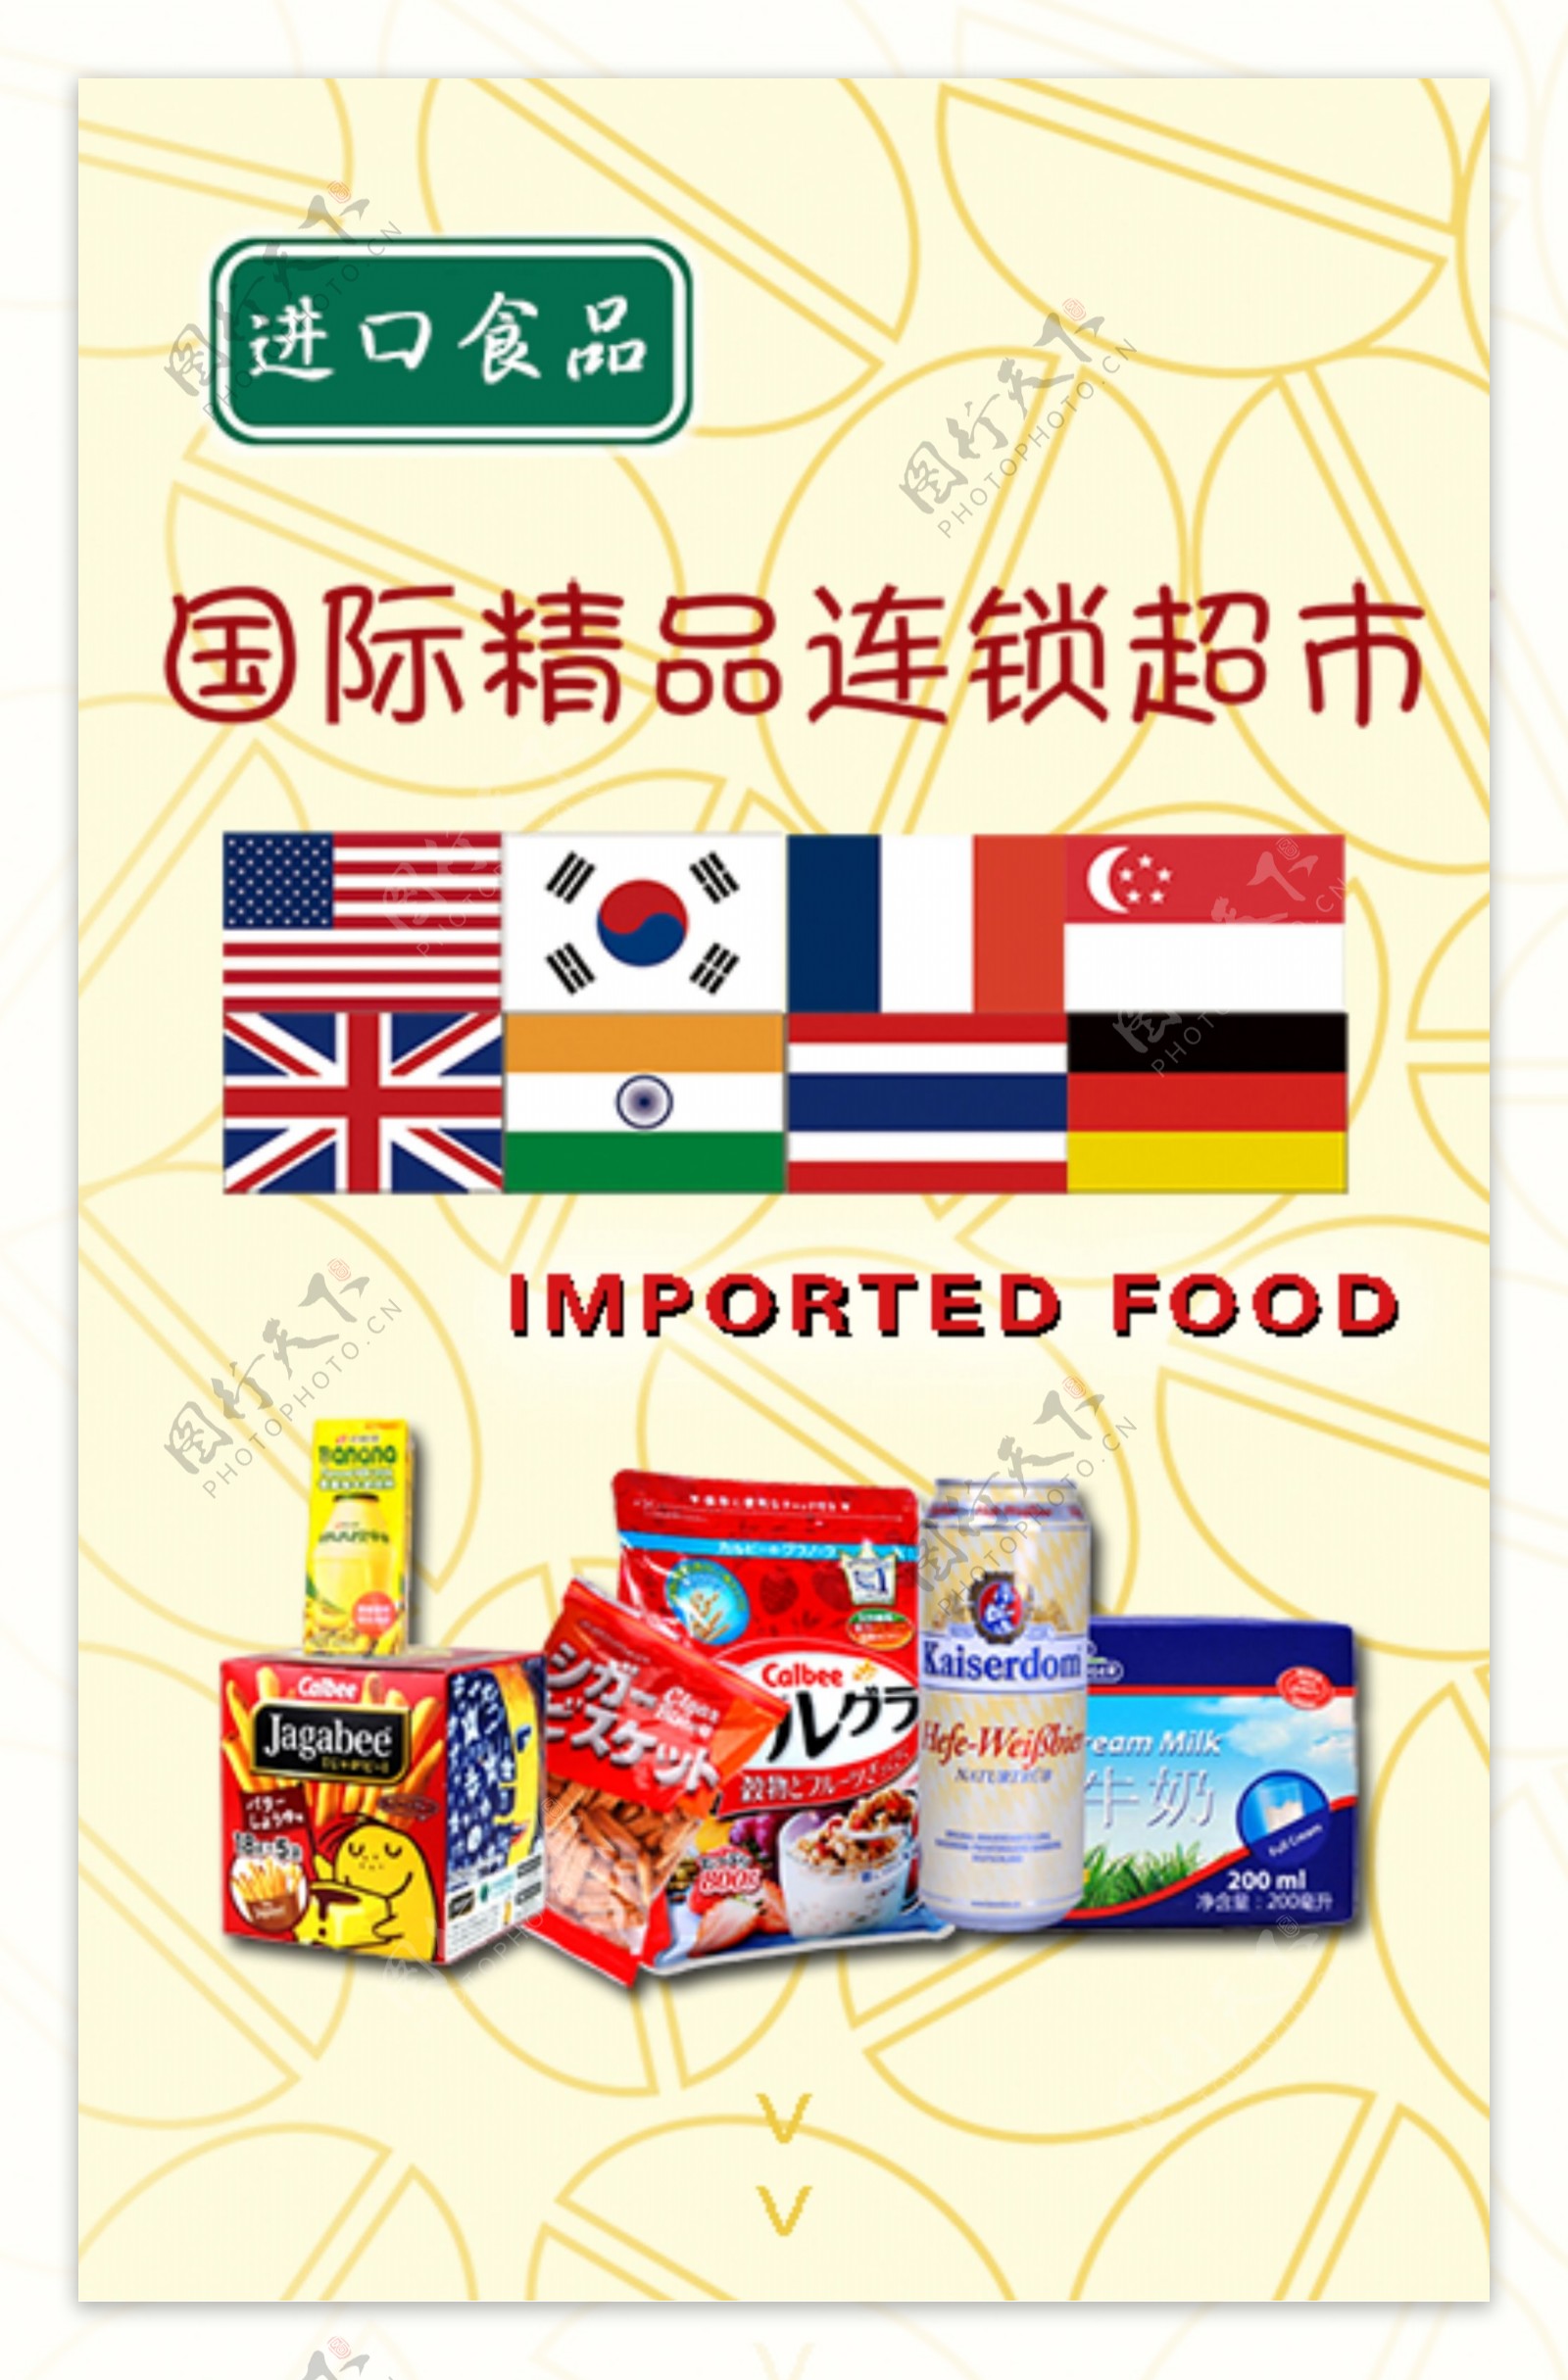 进口食品海报